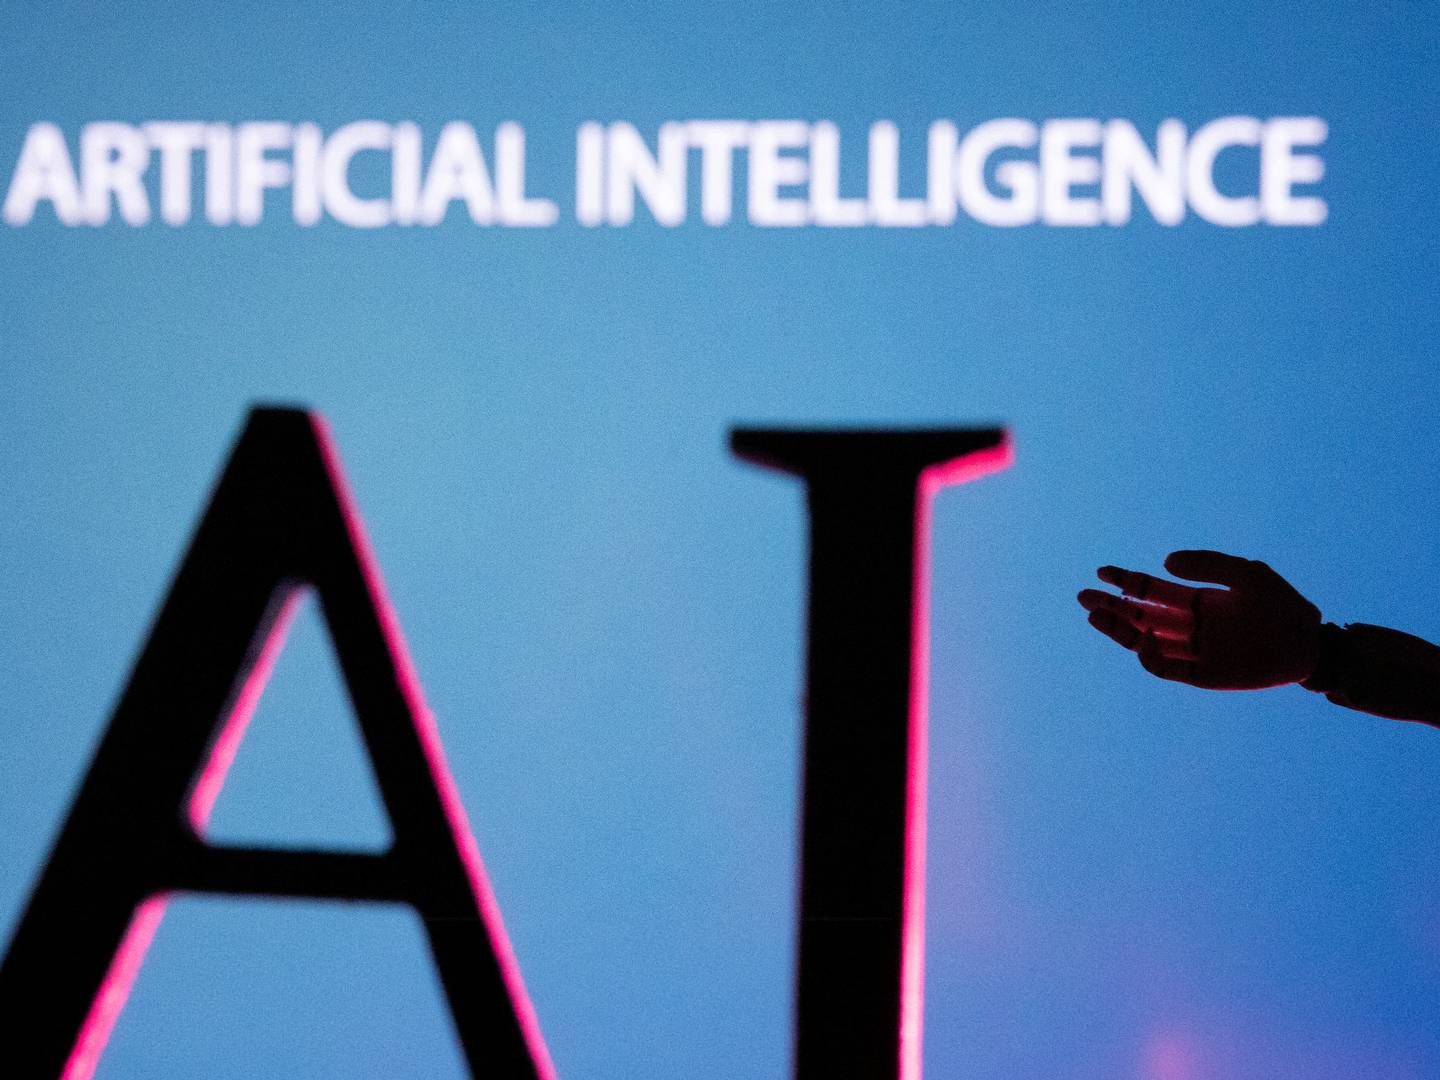 Forfatterne bag søgsmålet beskylder Meta, Microsoft og Bloomberg for at have brugt omstridt datasæt til at træne sine AI-modeller. | Foto: Dado Ruvic/Reuters/Ritzau Scanpix